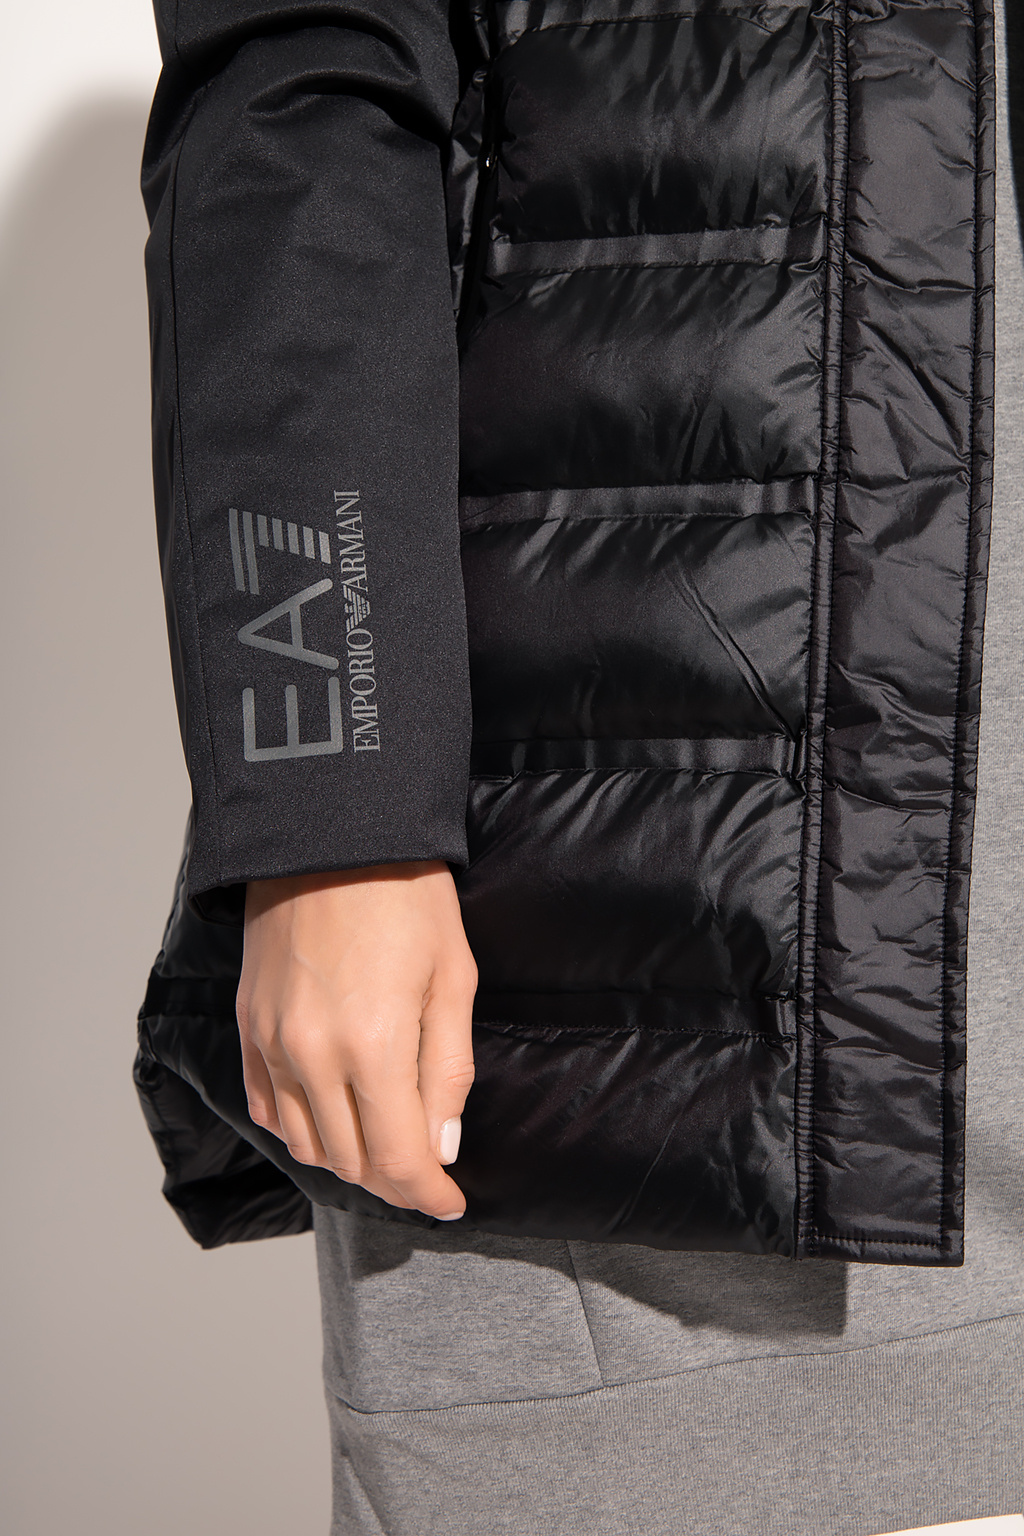 EA7 Emporio Armani XCP001ed jacket